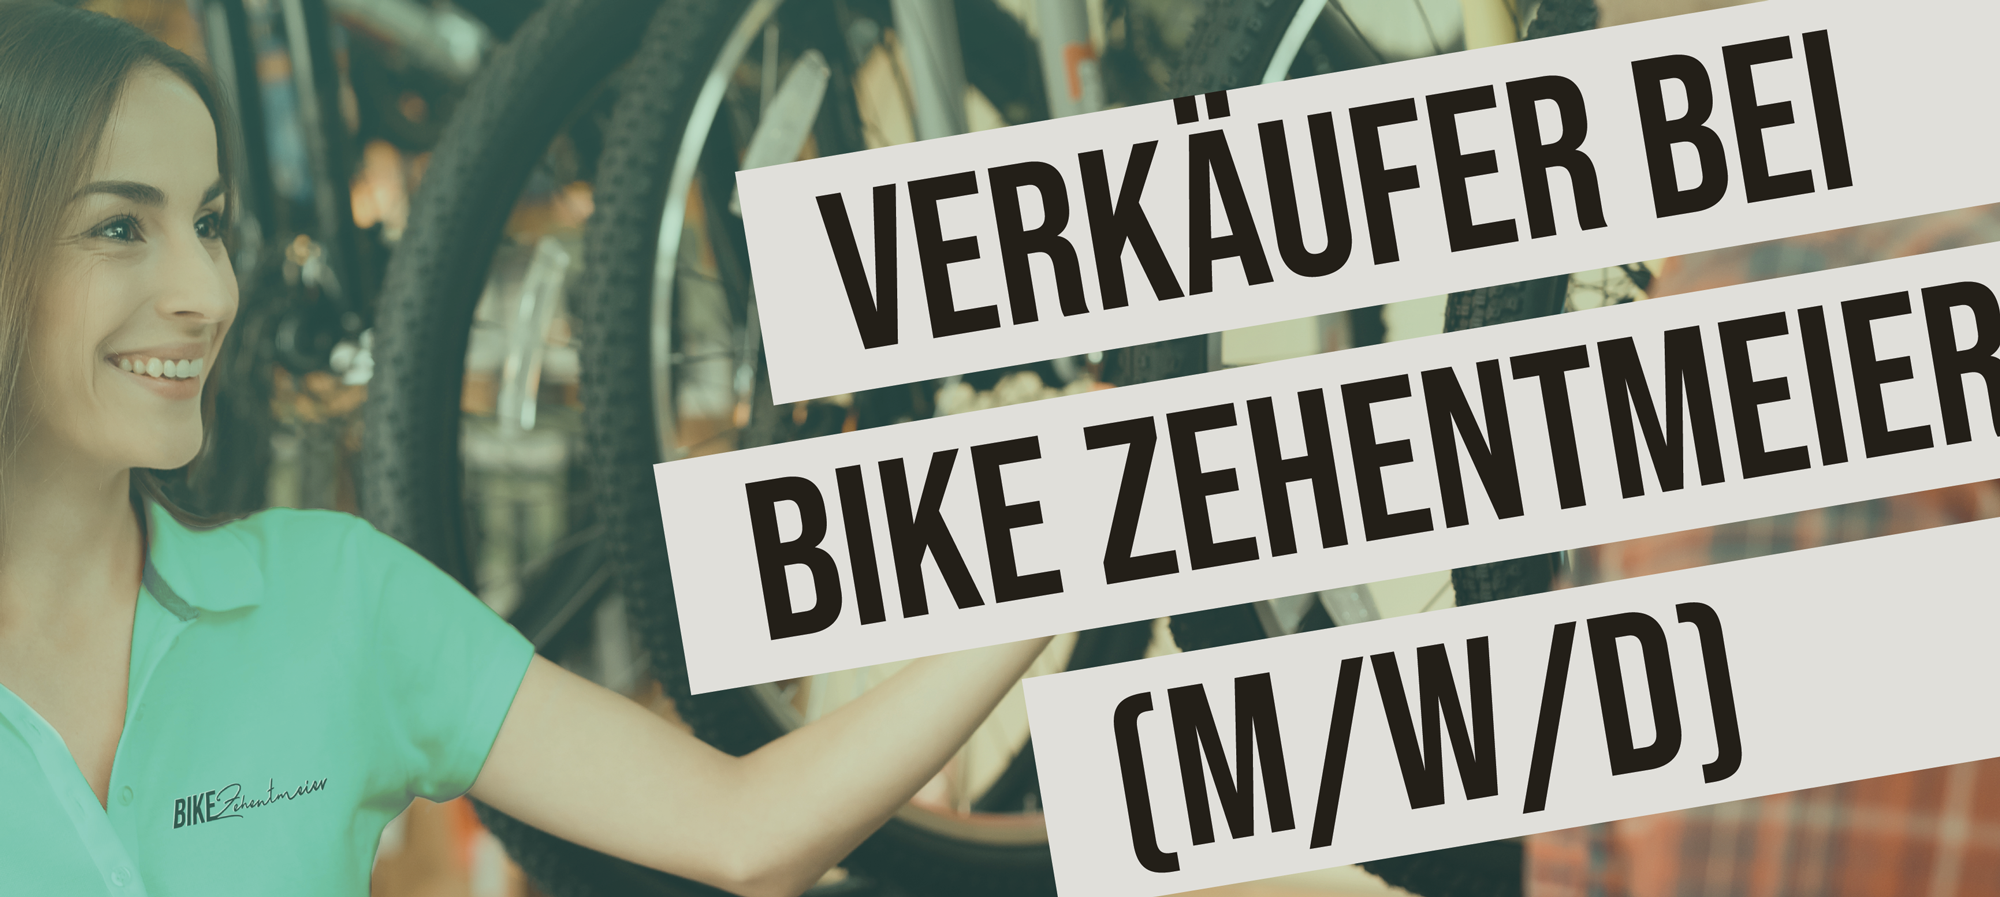 Verkäufer bei Bike Zehentmeier (m/w/d)